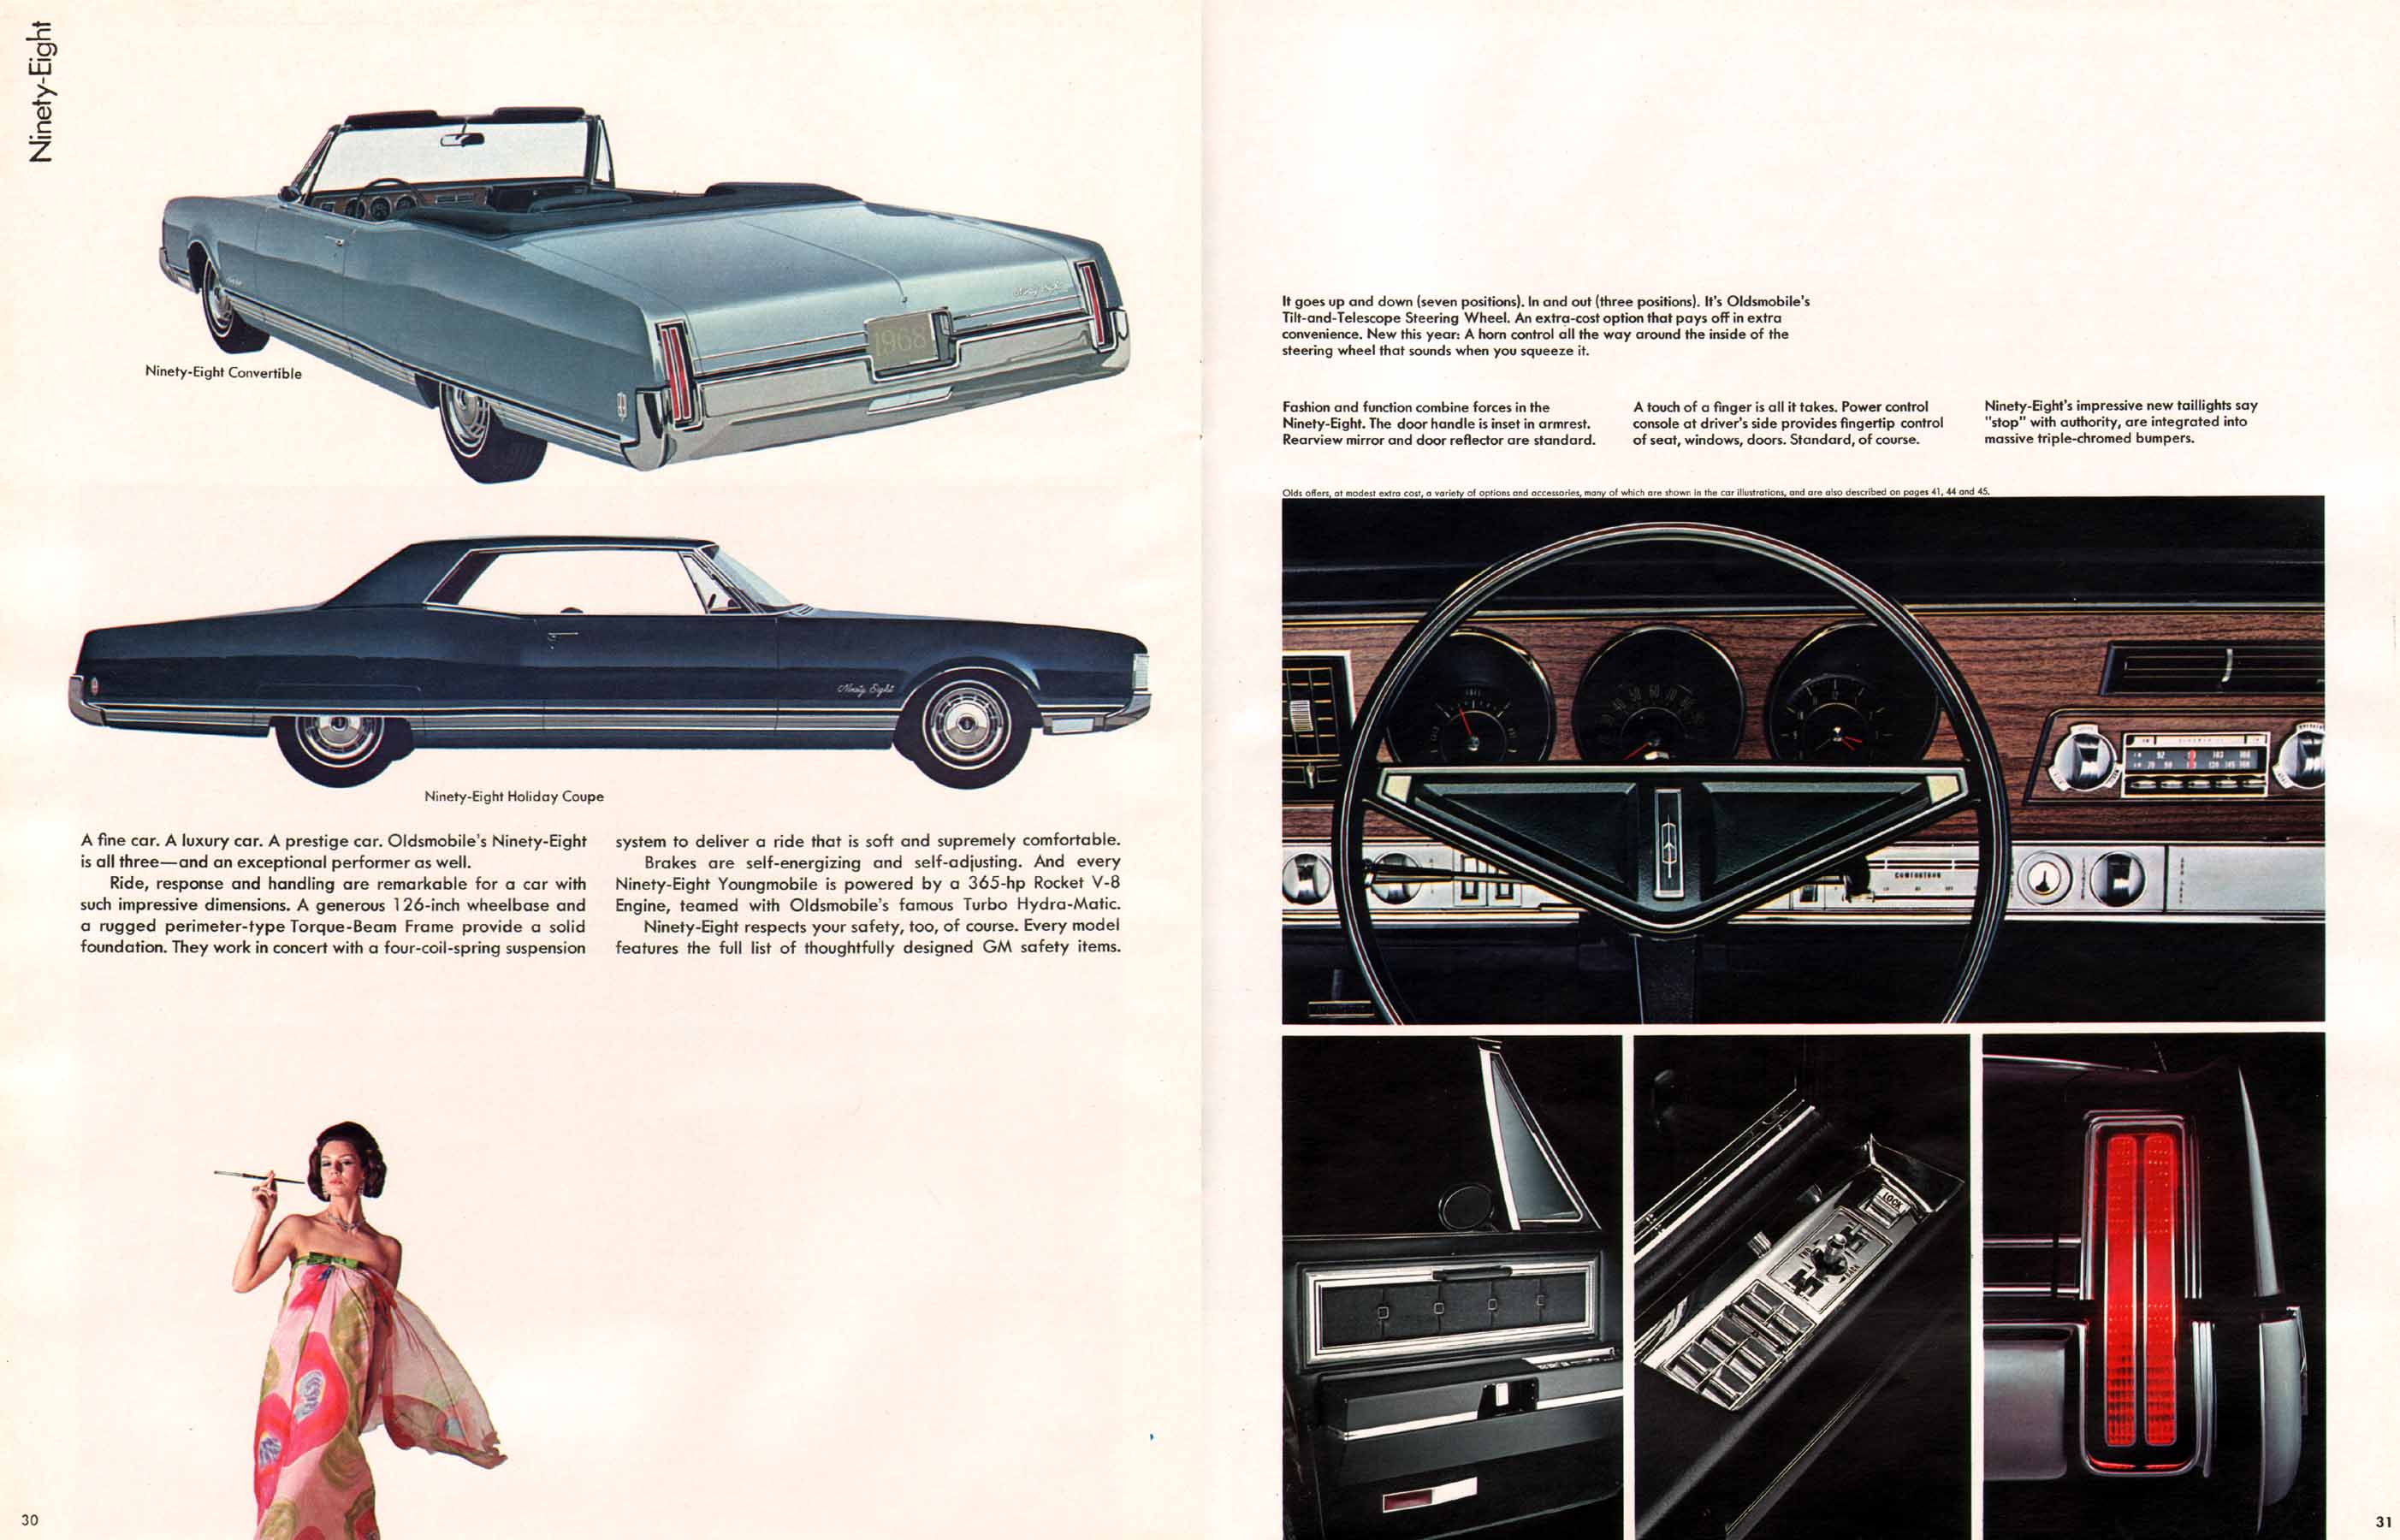 1968 Oldsmobile Prestige Brochure Page 10